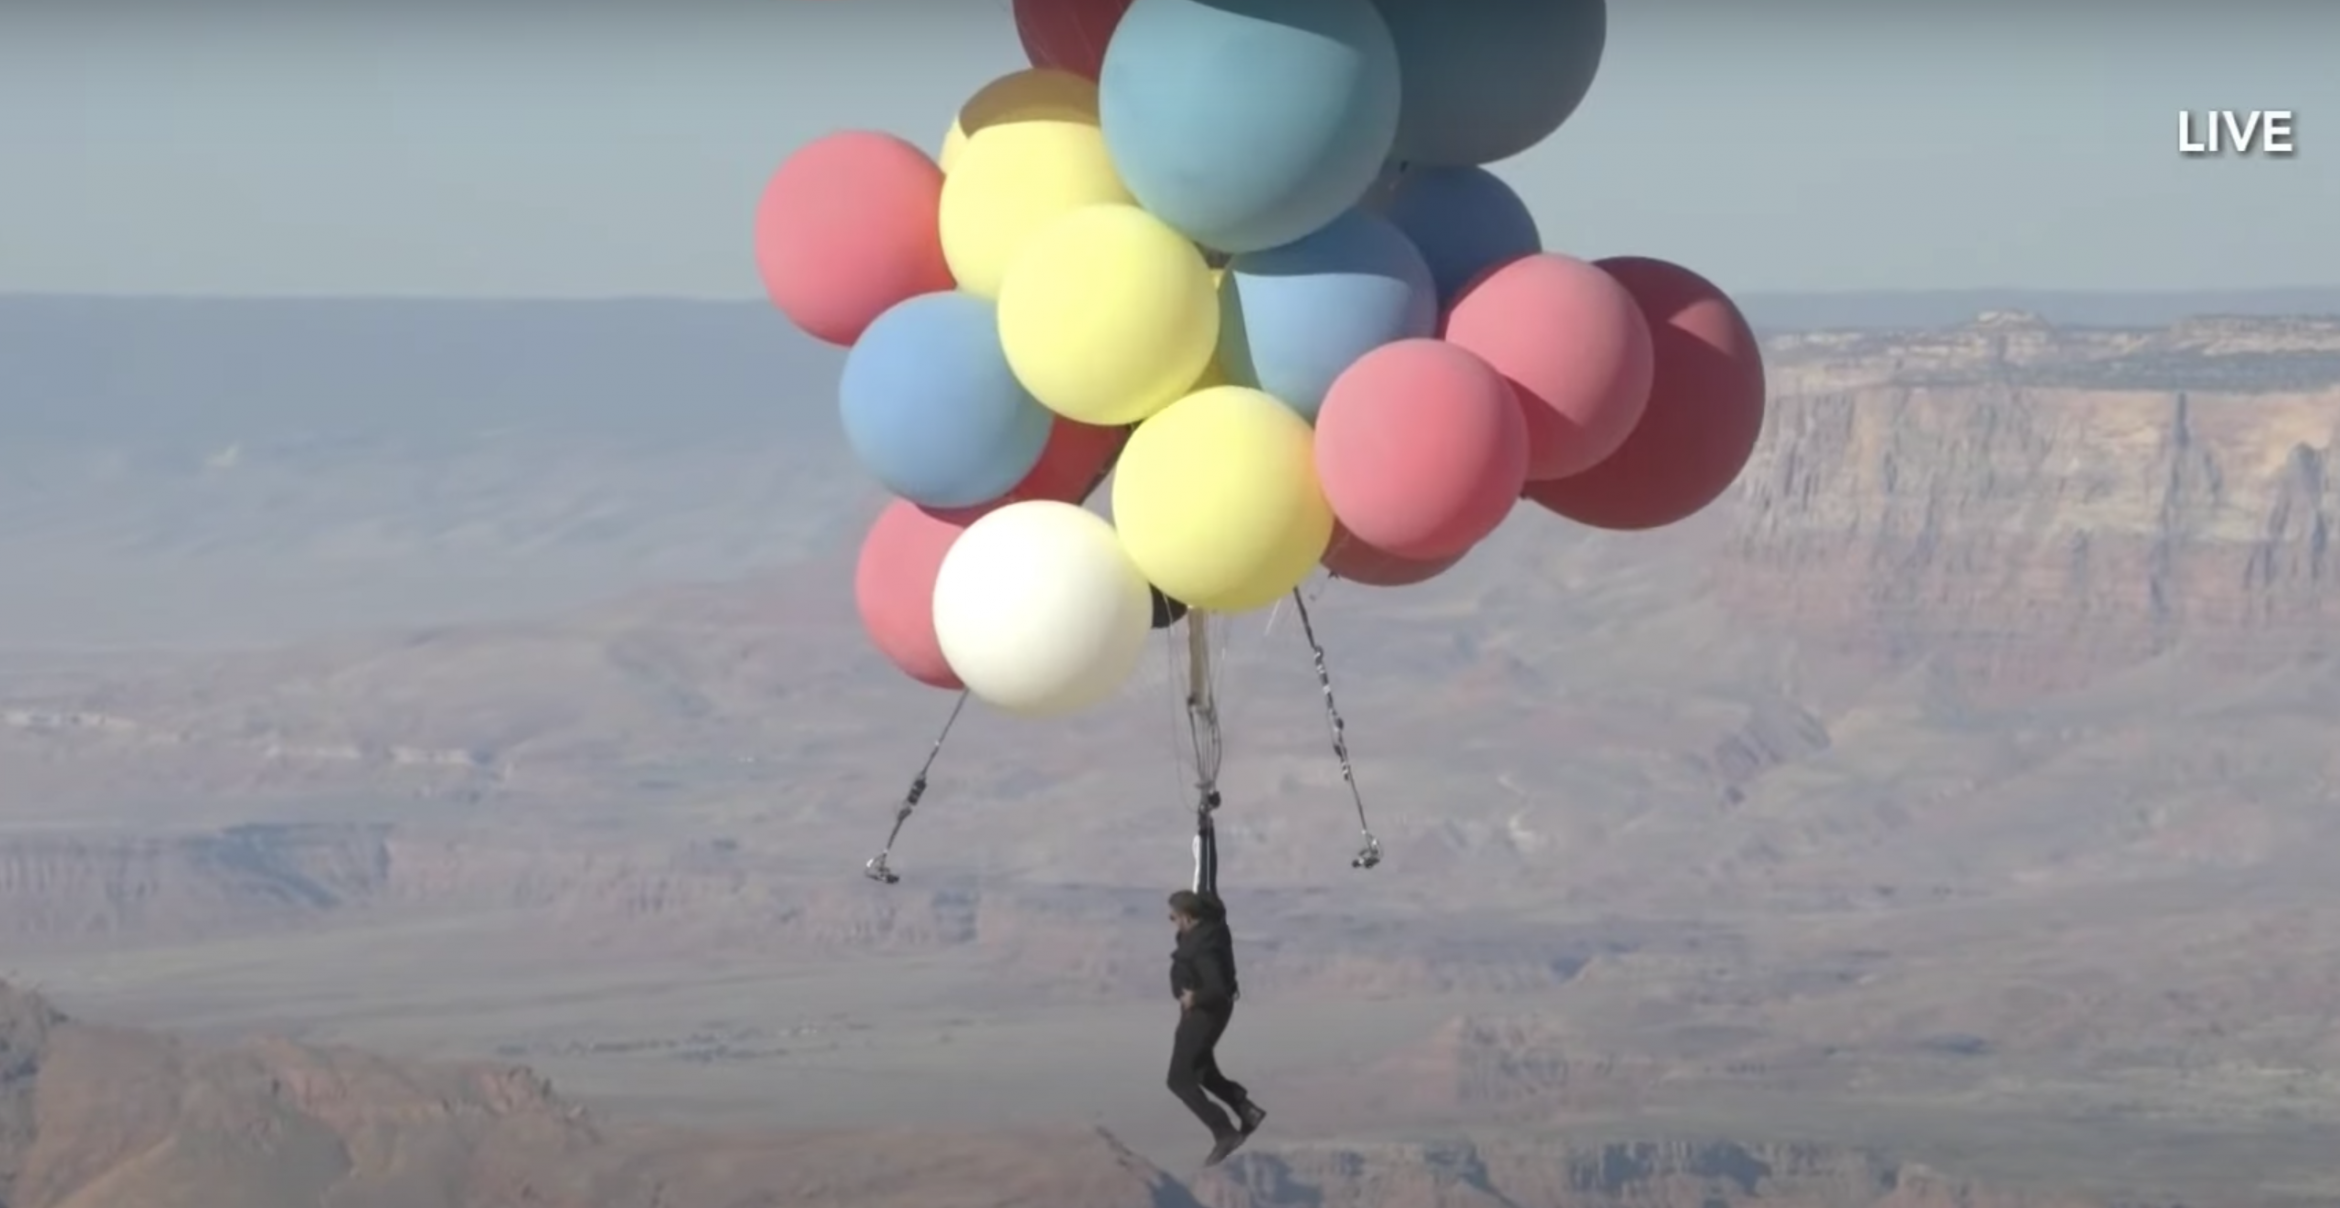 Über sieben Kilometer hoch: Künstler fliegt wie in Pixars „Oben“ an Luftballons durch die Luft